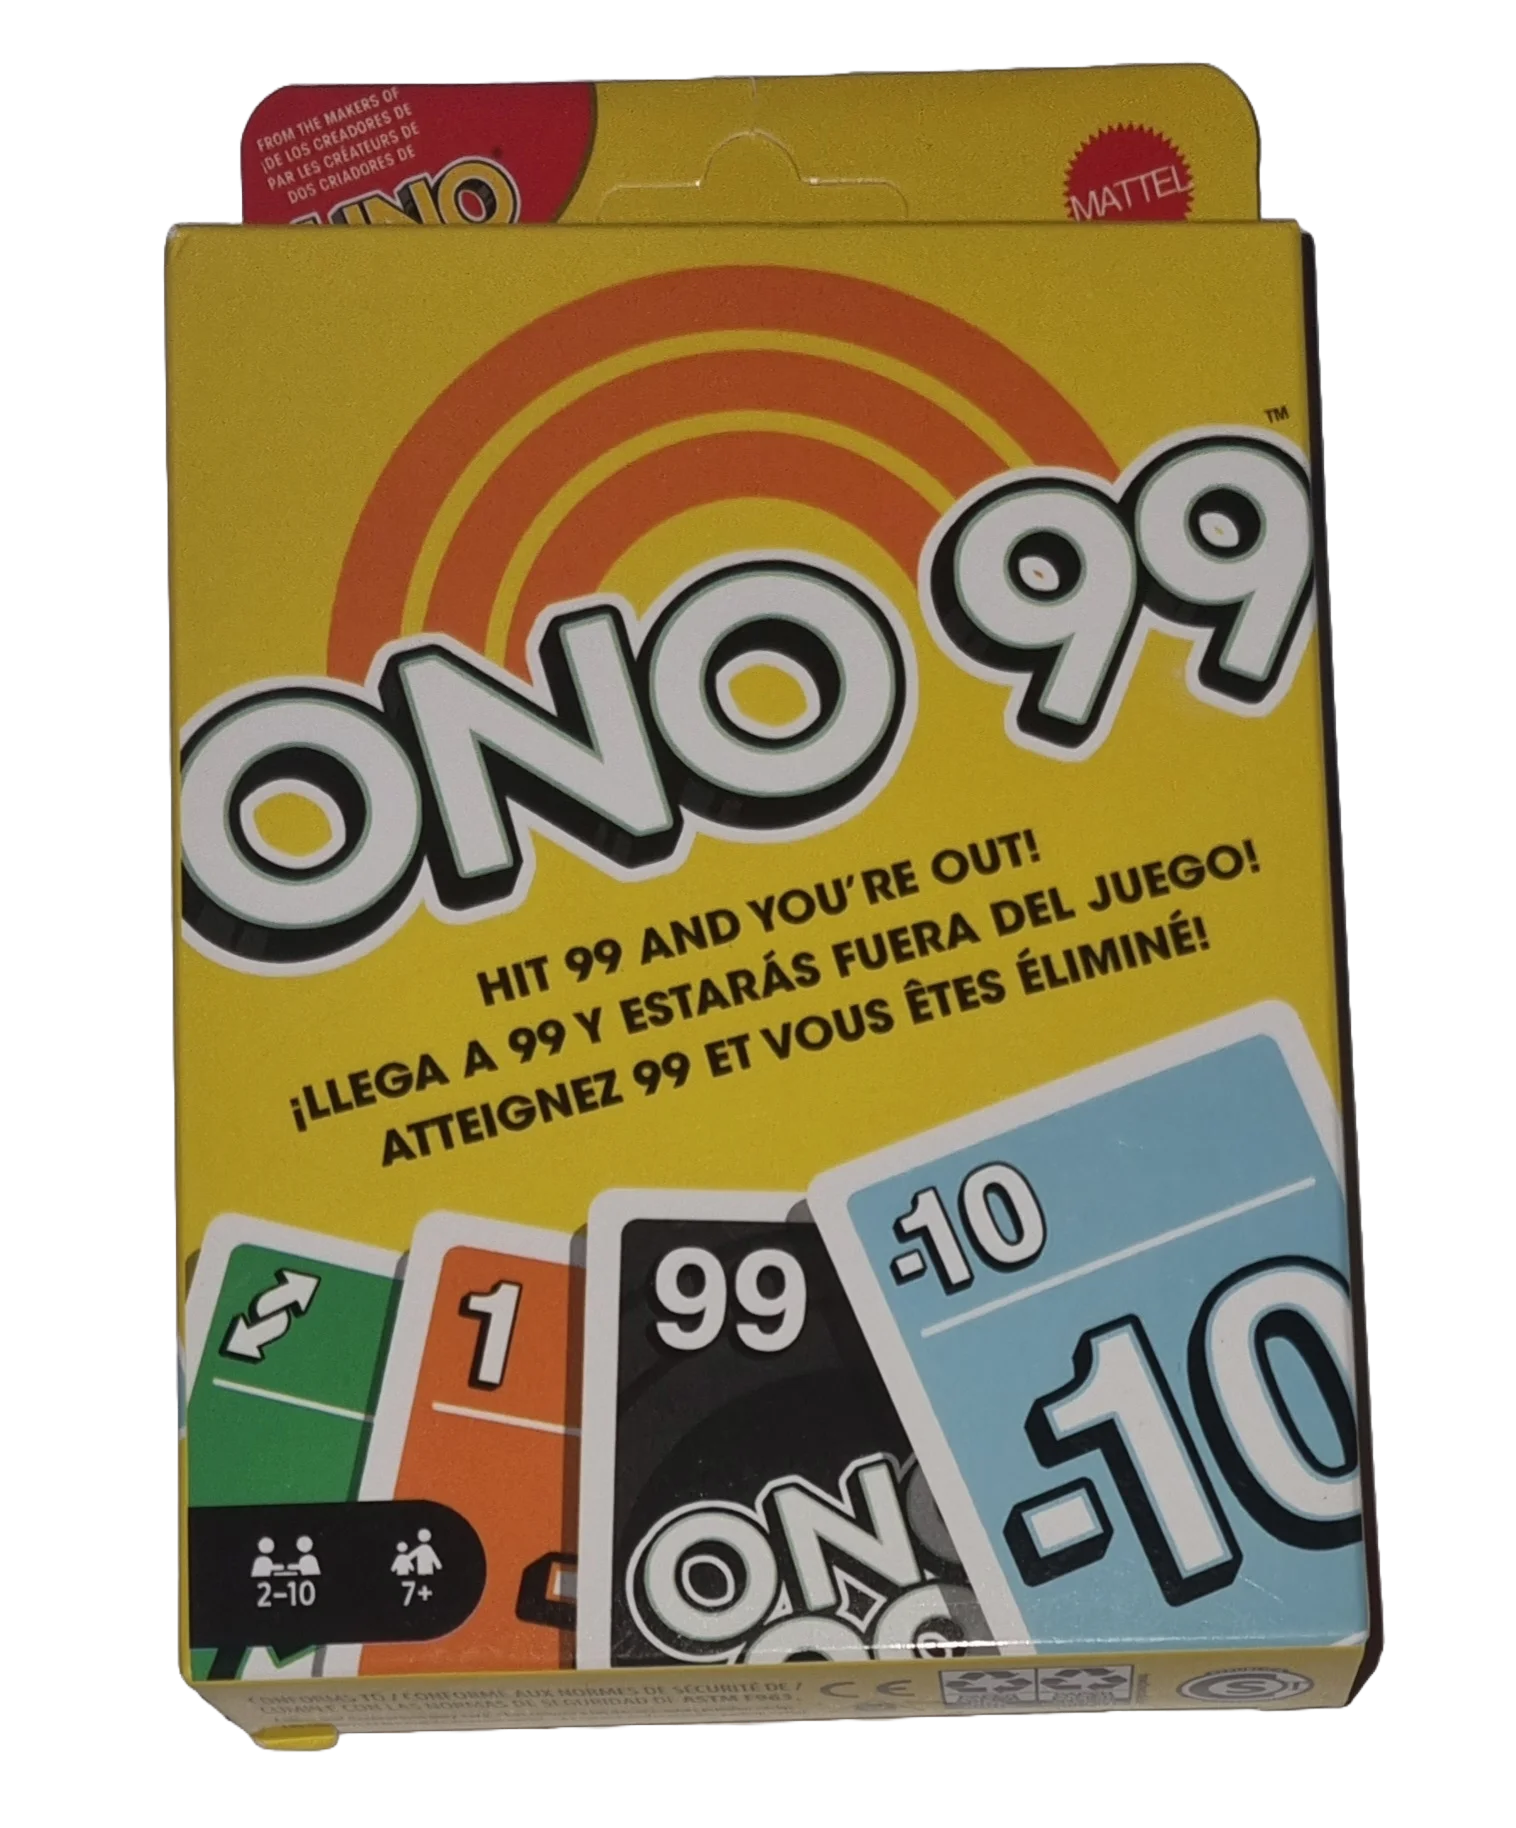 Mattel Ono 99